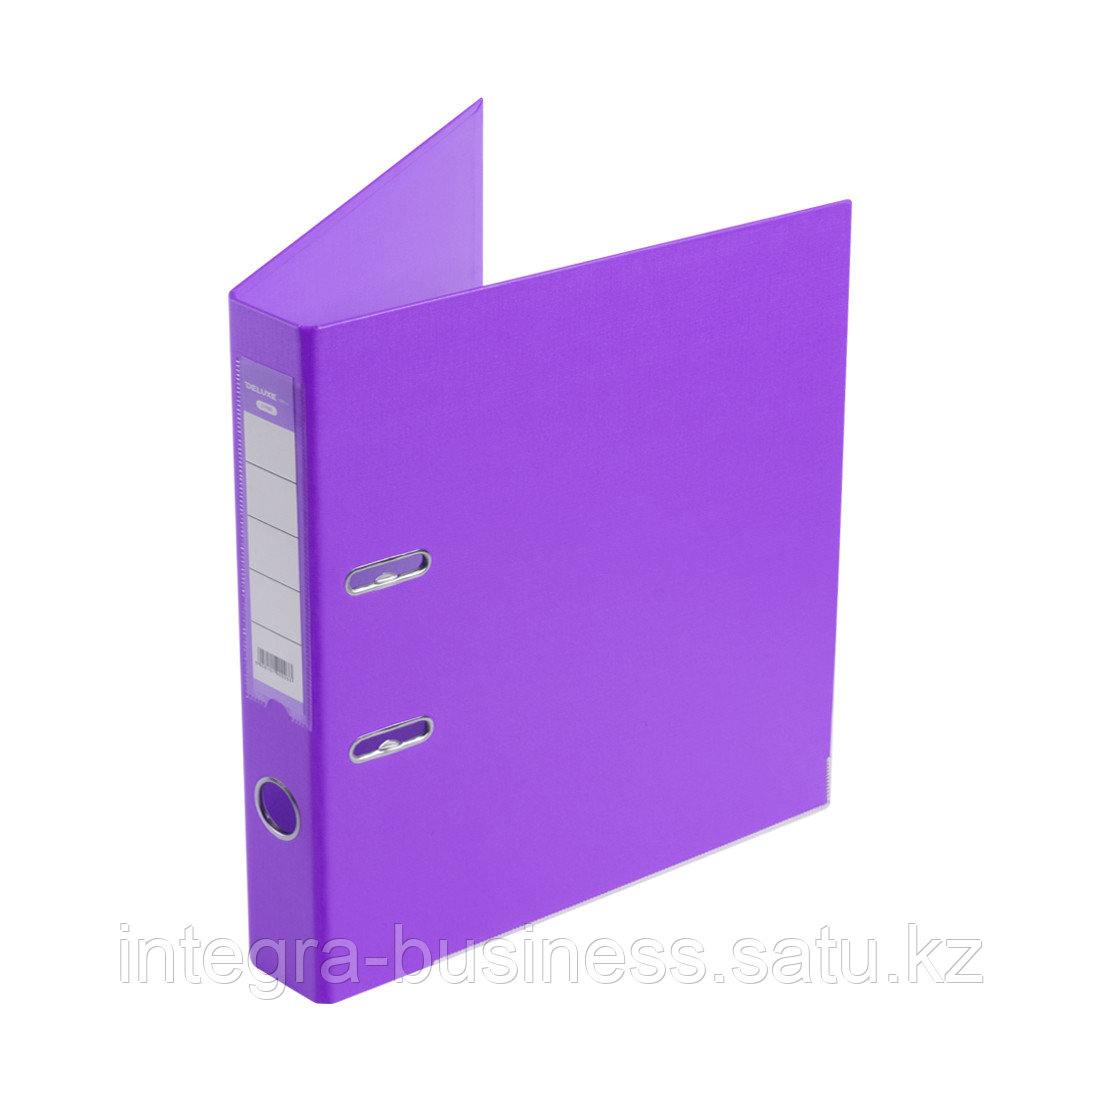 Папка-регистратор Deluxe с арочным механизмом, Office 2-PE1, А4, 50 мм, фиолетовый, фото 1